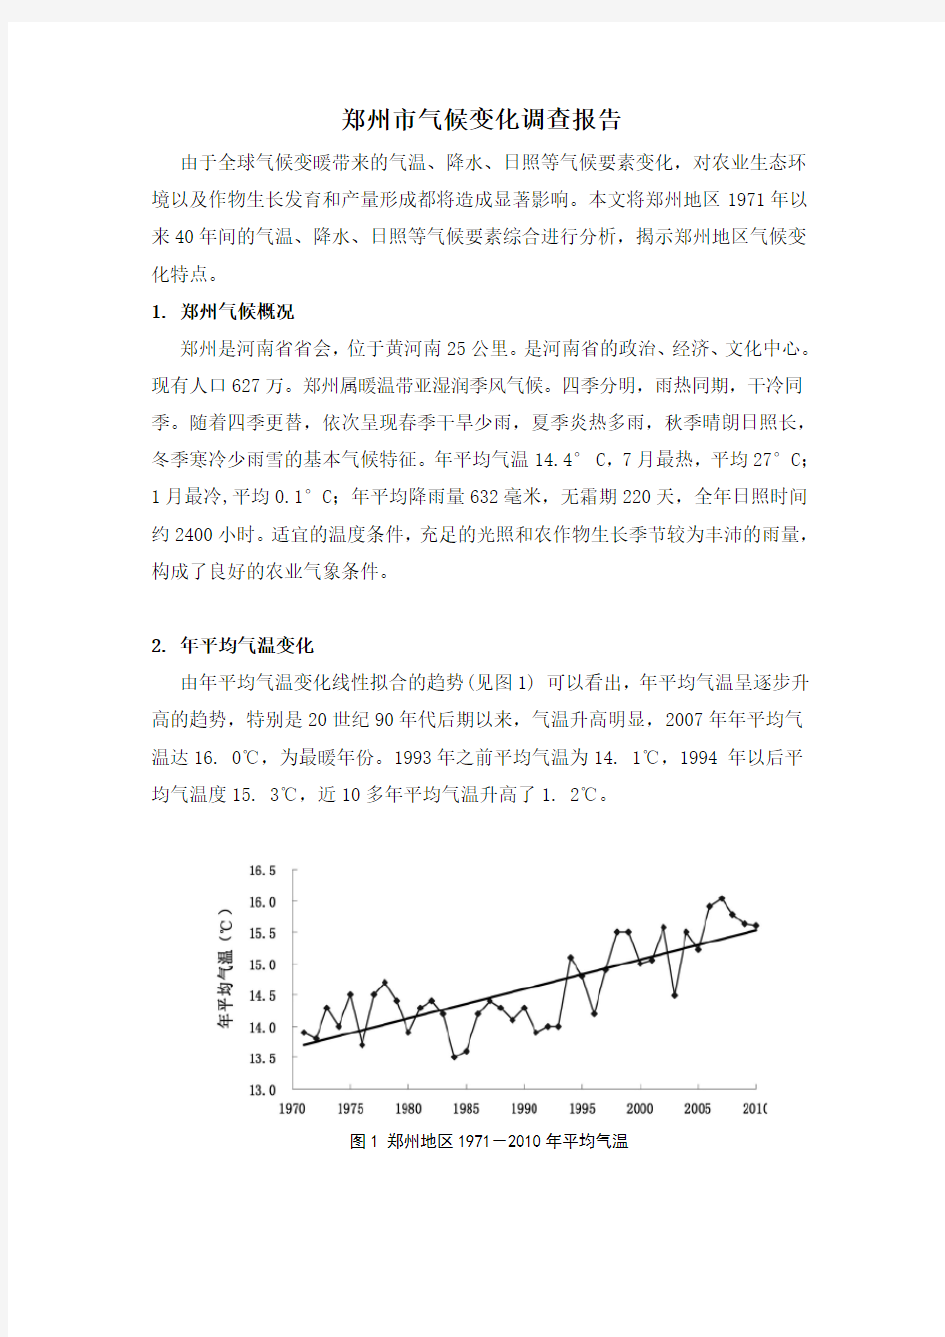 郑州市环境变化报告